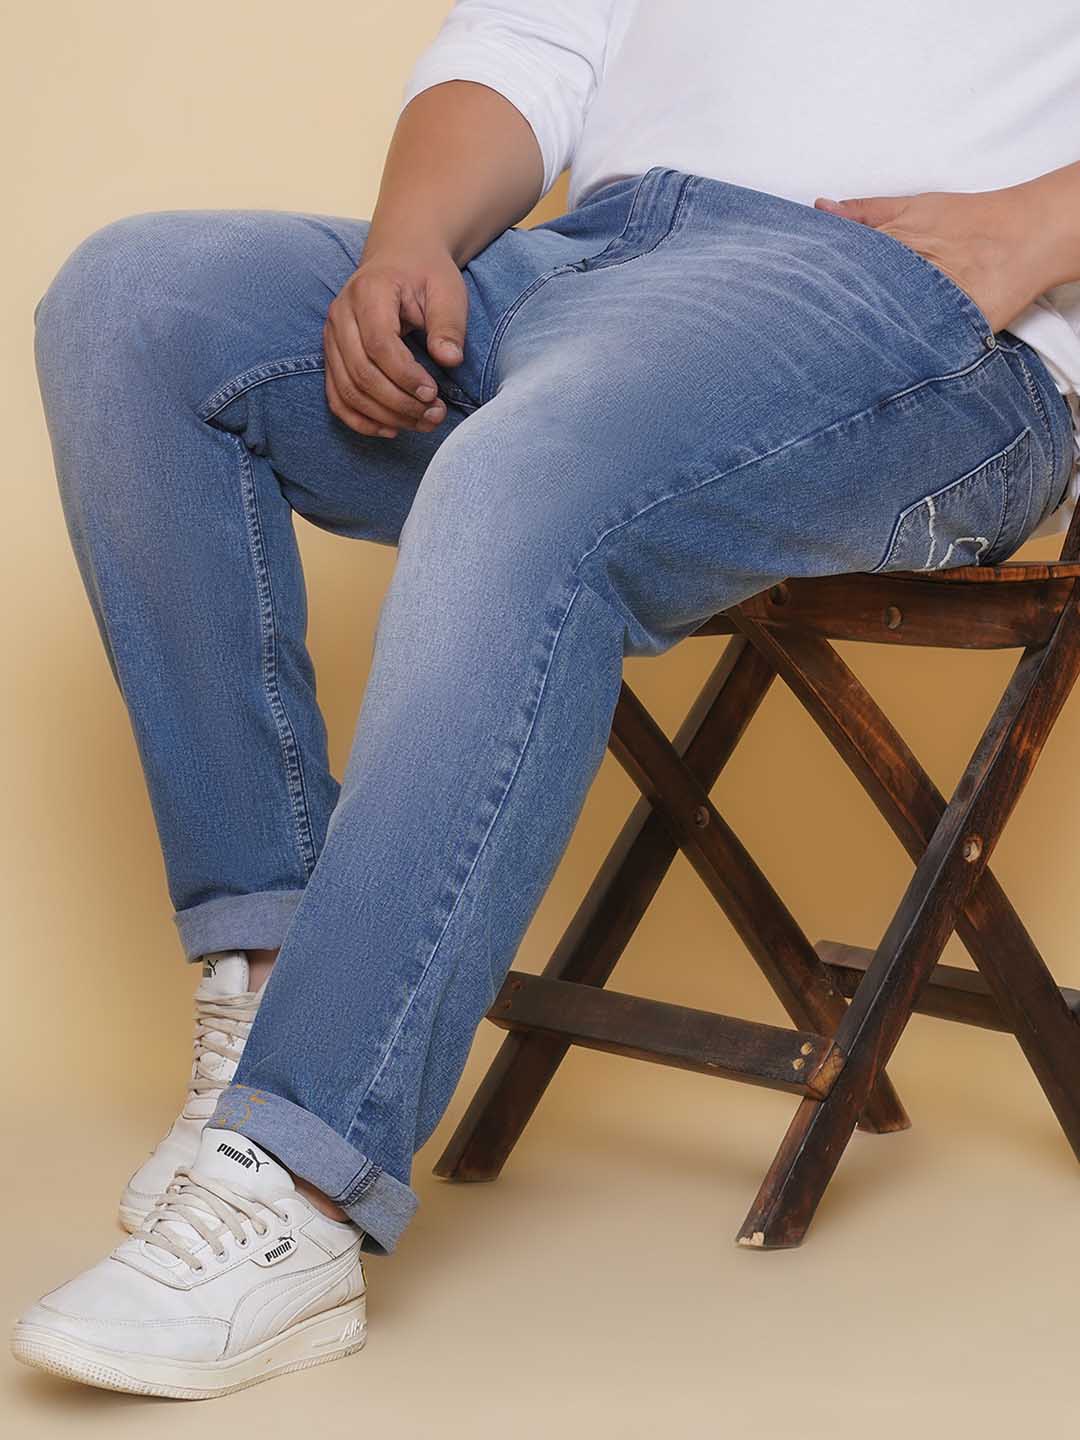 bottomwear/jeans/EJPJ25134/ejpj25134-1.jpg